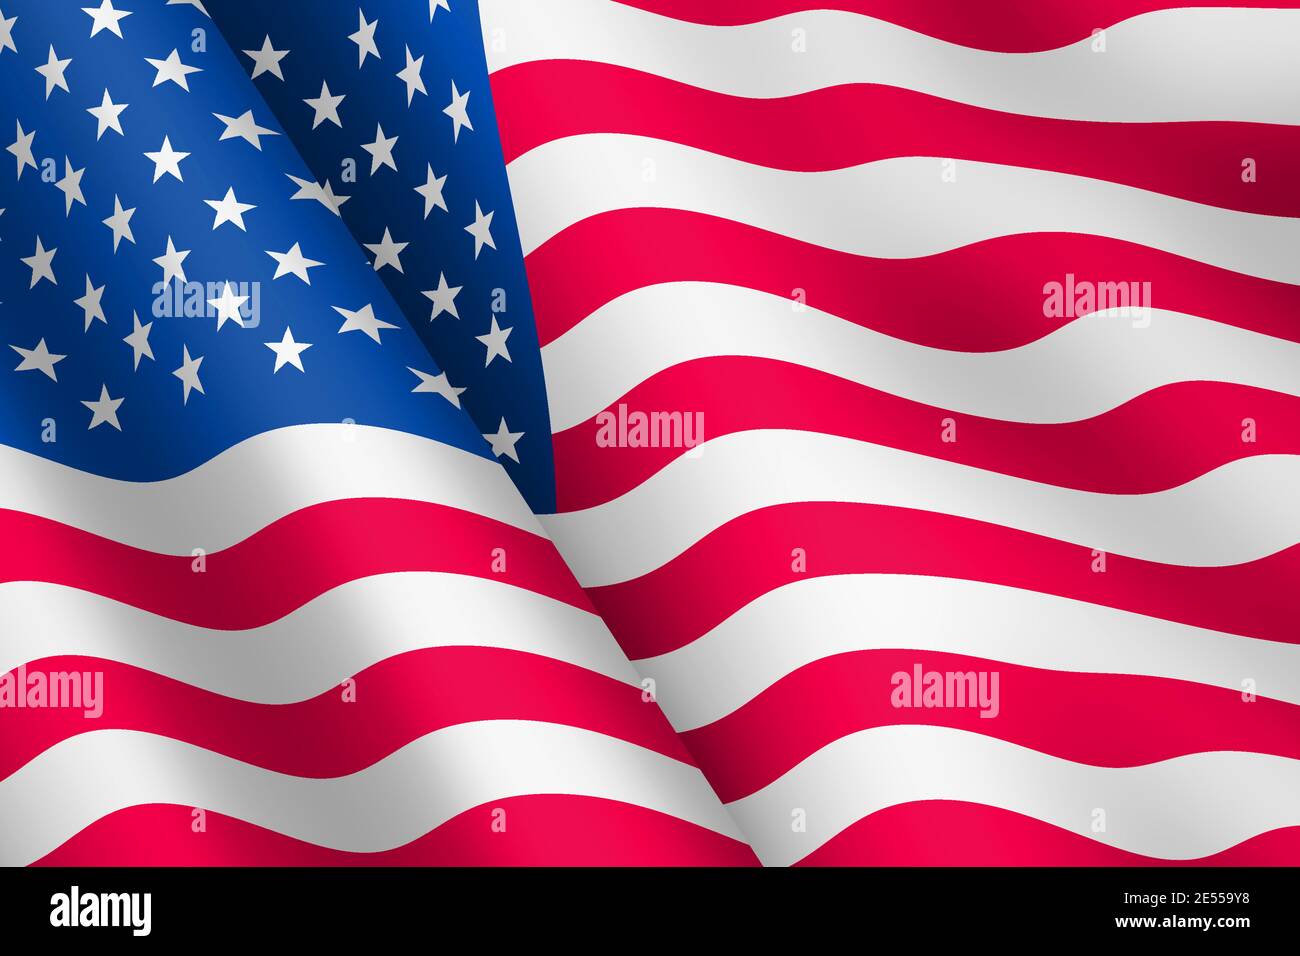 Etats-Unis d'Amérique drapeau de l'ondulation du vent en 3d illustration étoiles et rayures de la vieille gloire Banque D'Images